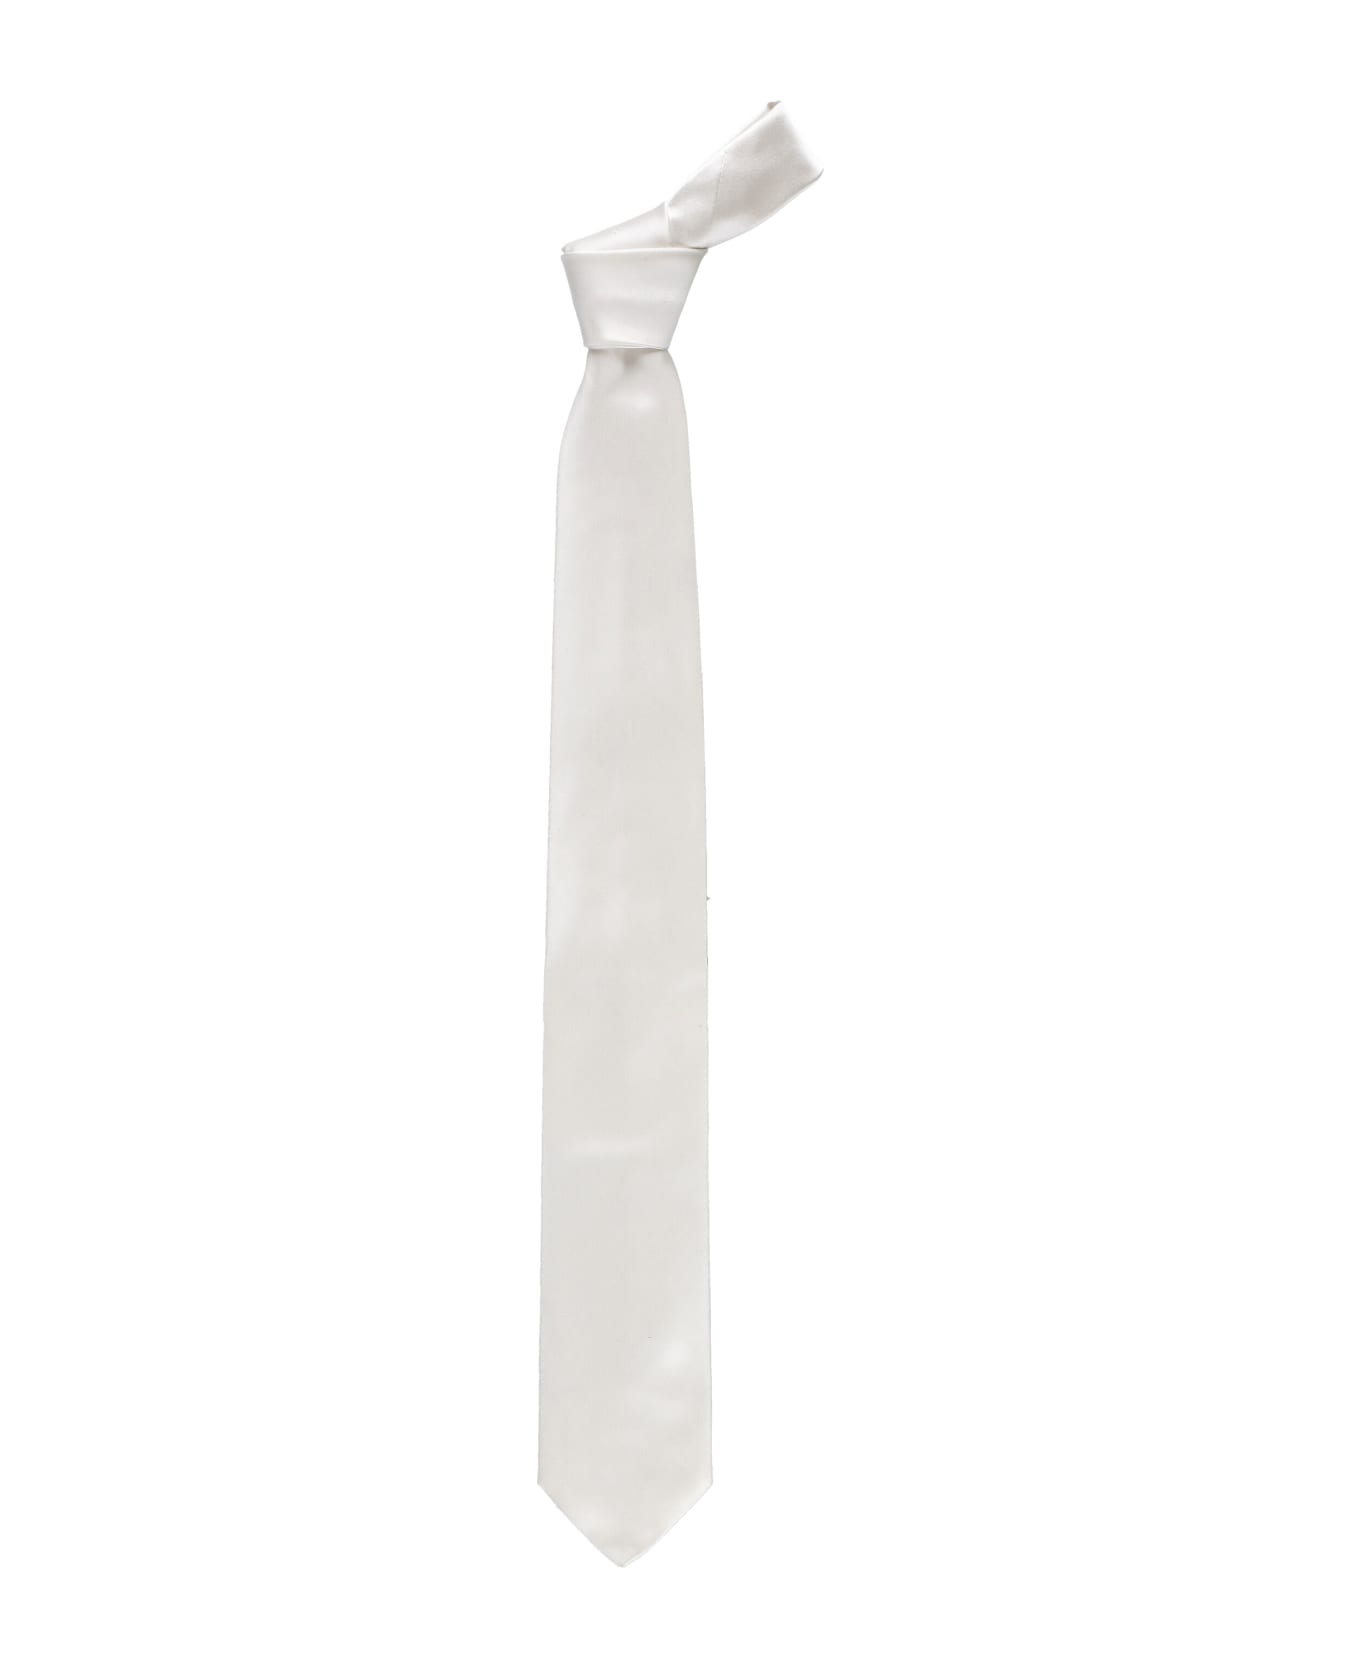 Church's Silk Tie - White